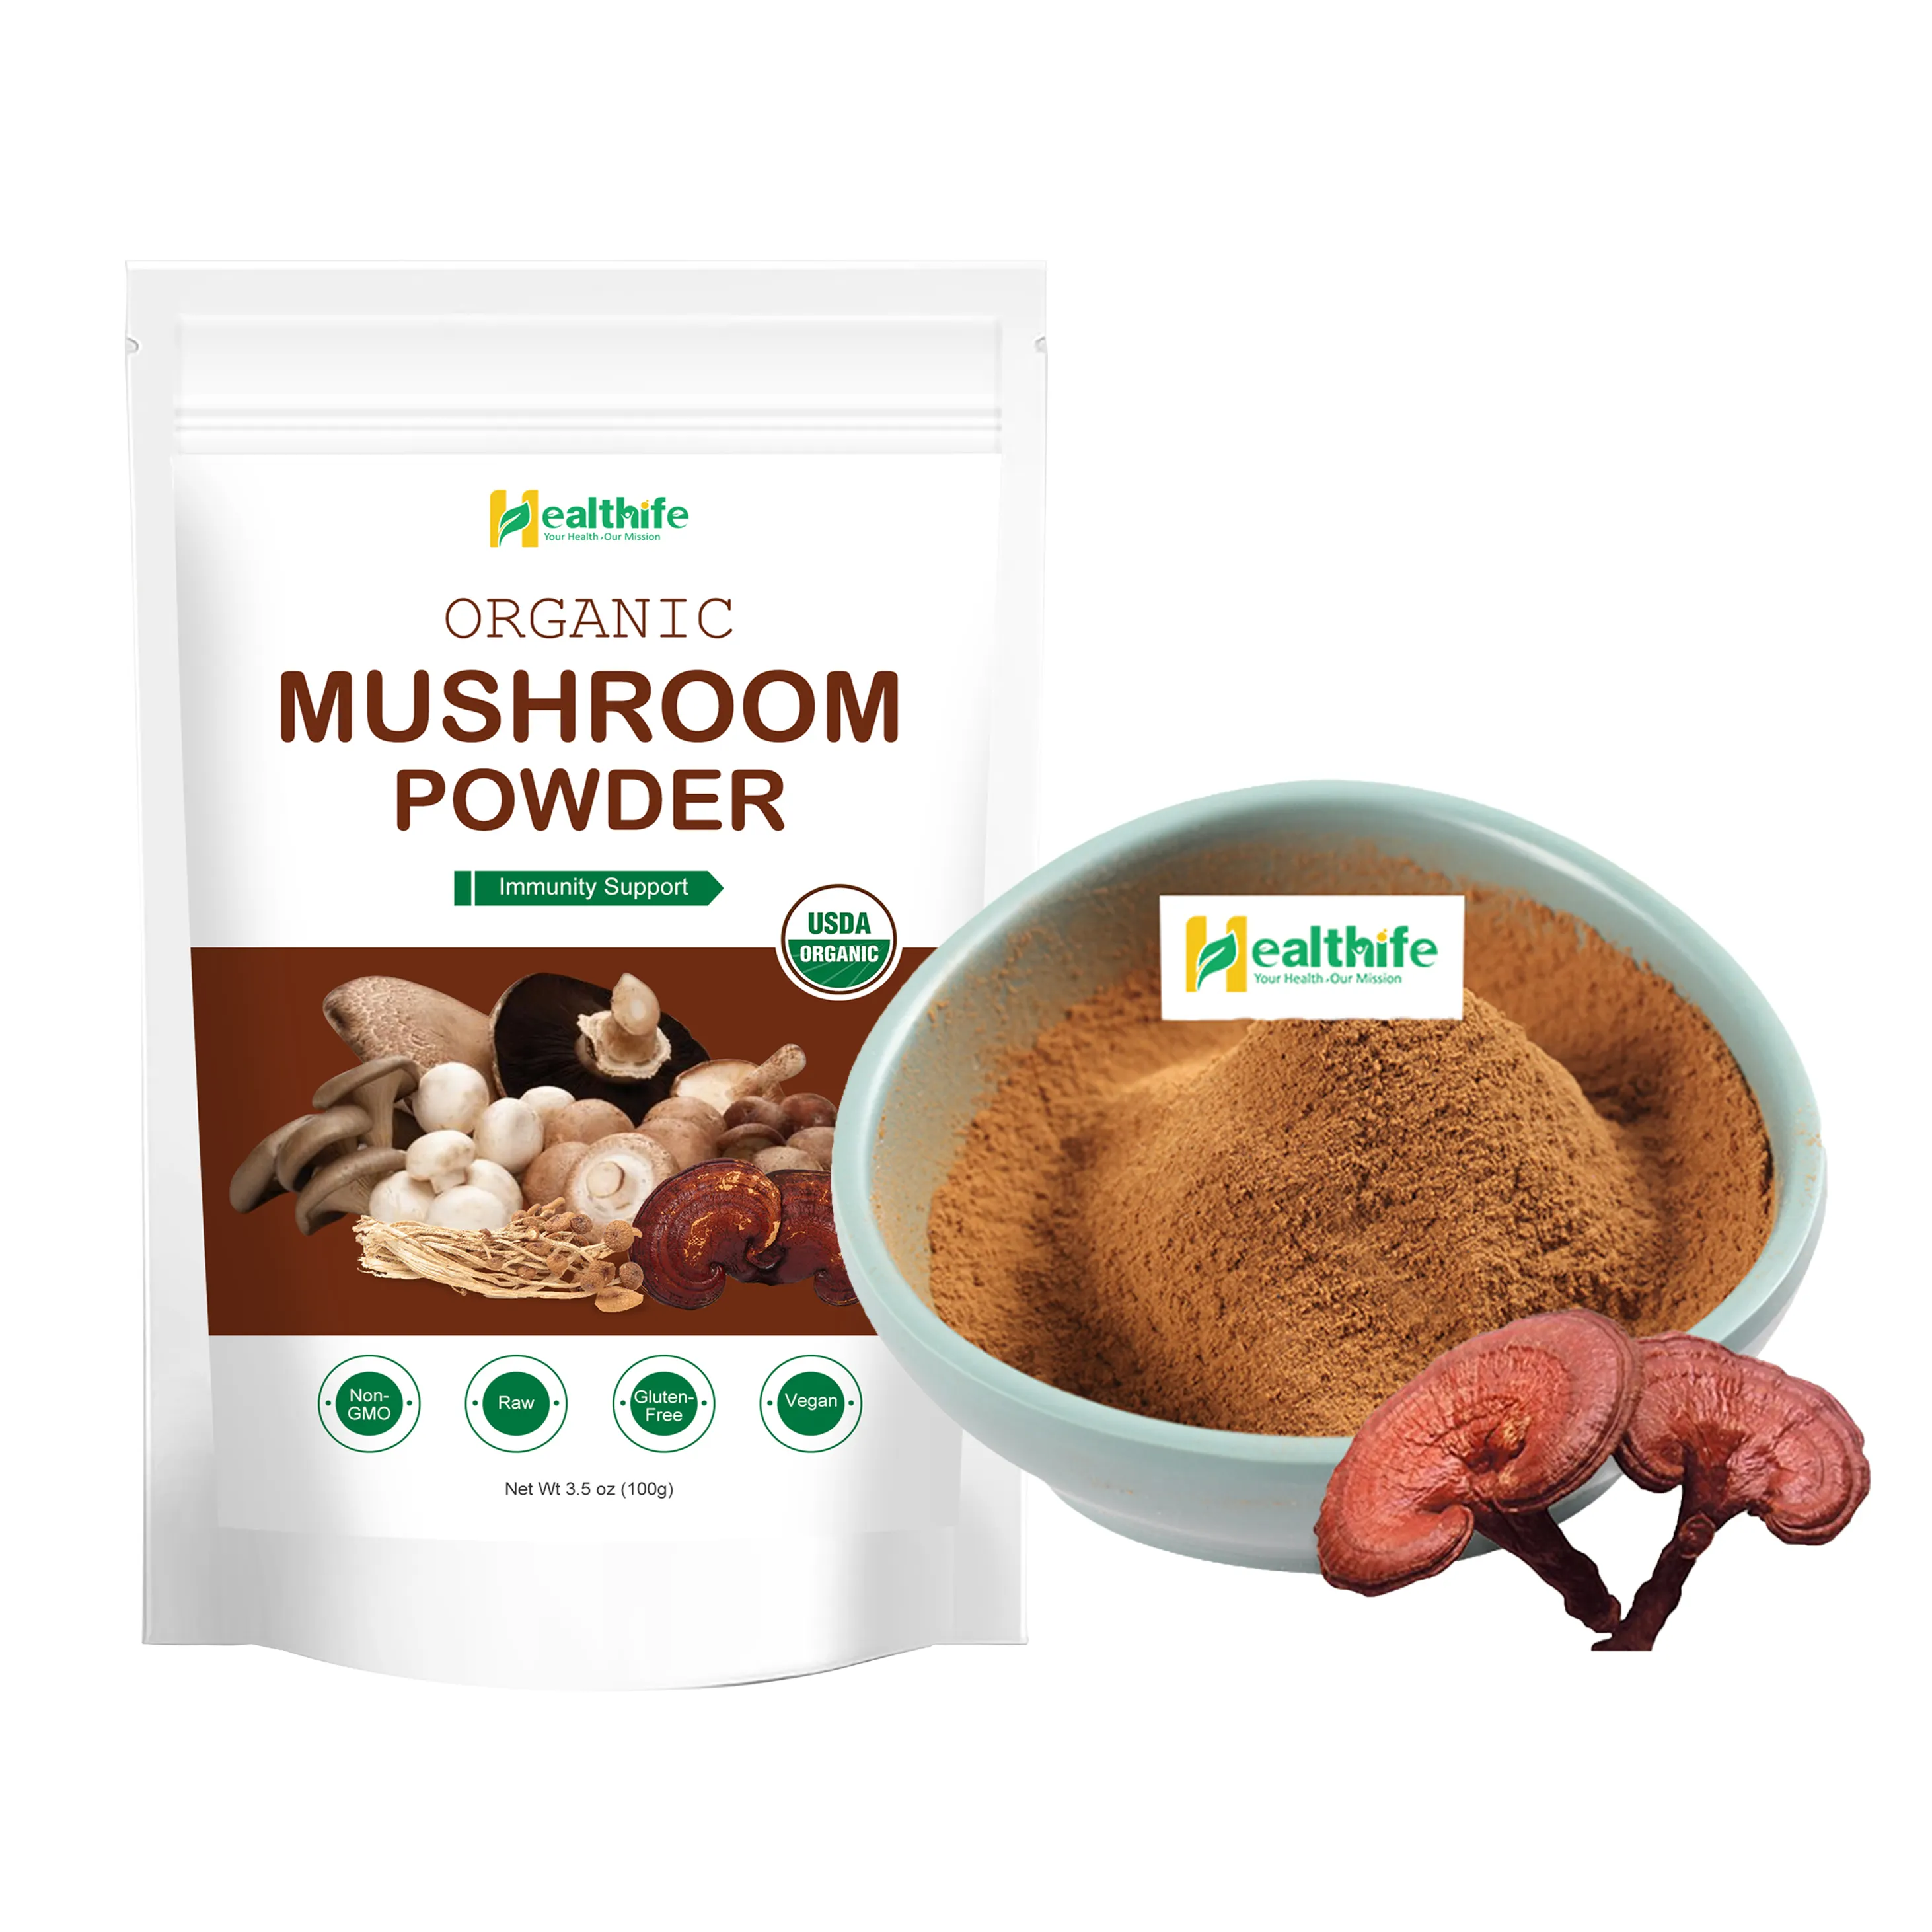 EU & USDA Organic Ganoderma Lucidum/Reishi Mushroom Powder, Reishi Mushroom Extract